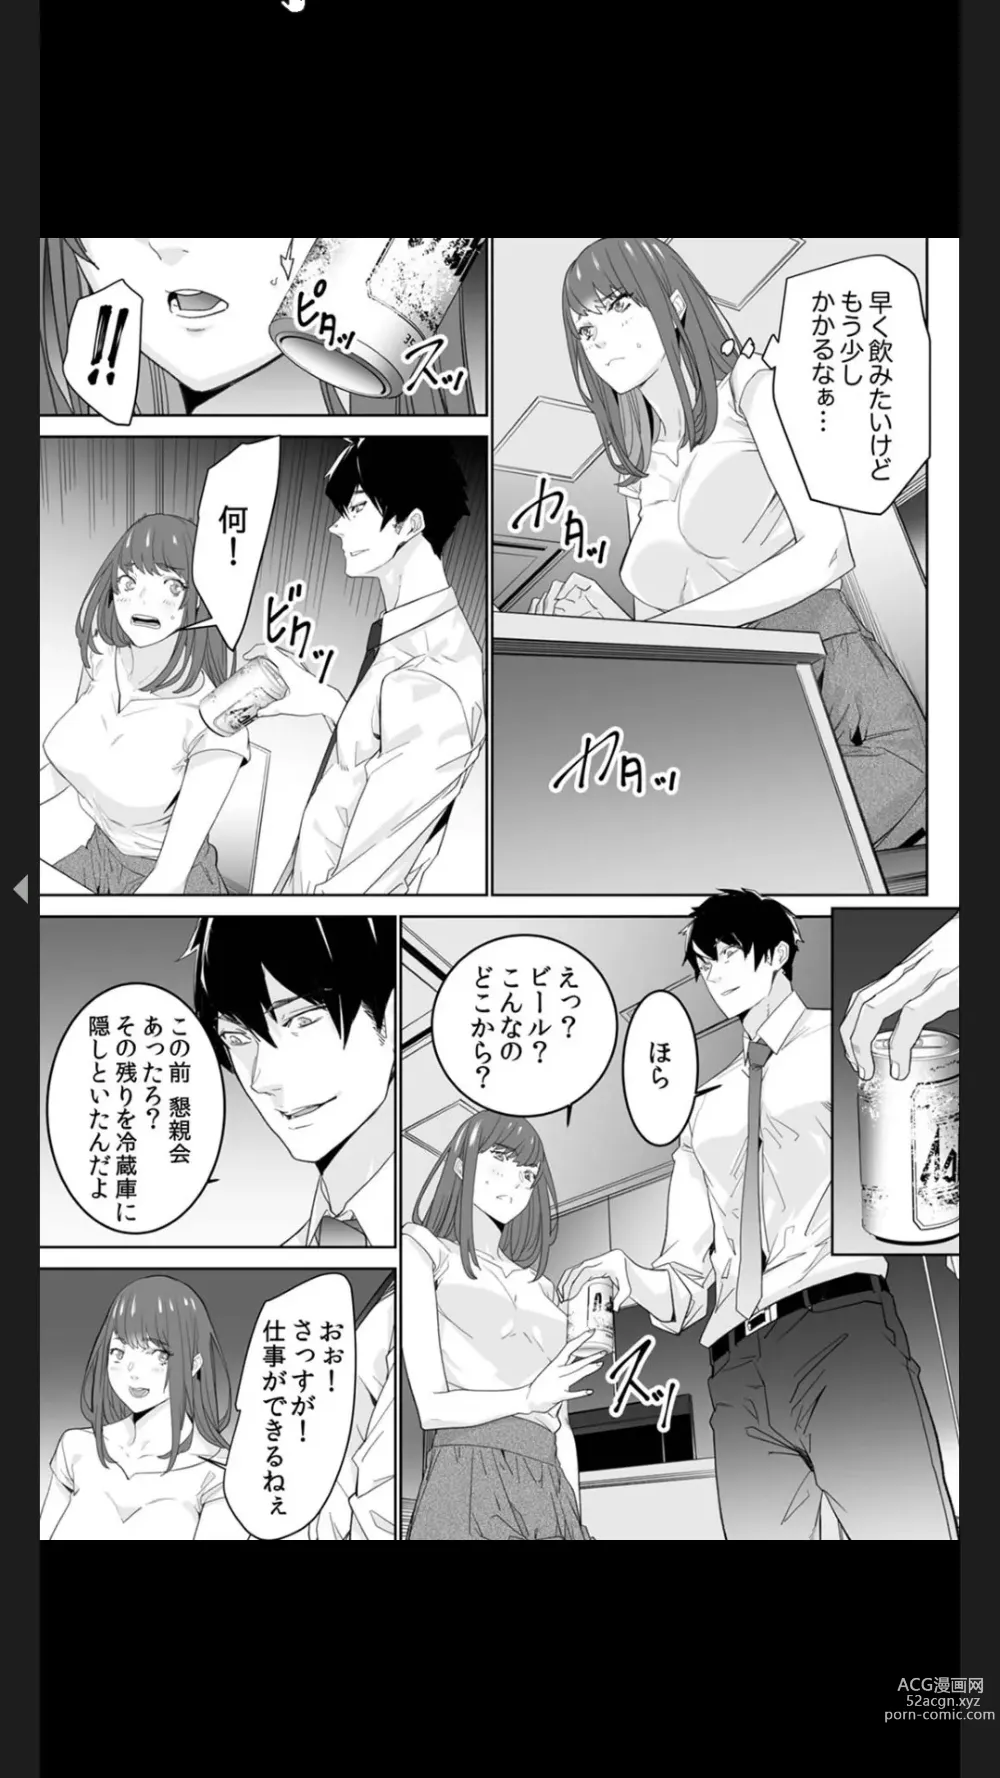 Page 7 of manga Koitsu no SEX, Do-S Sugi...!